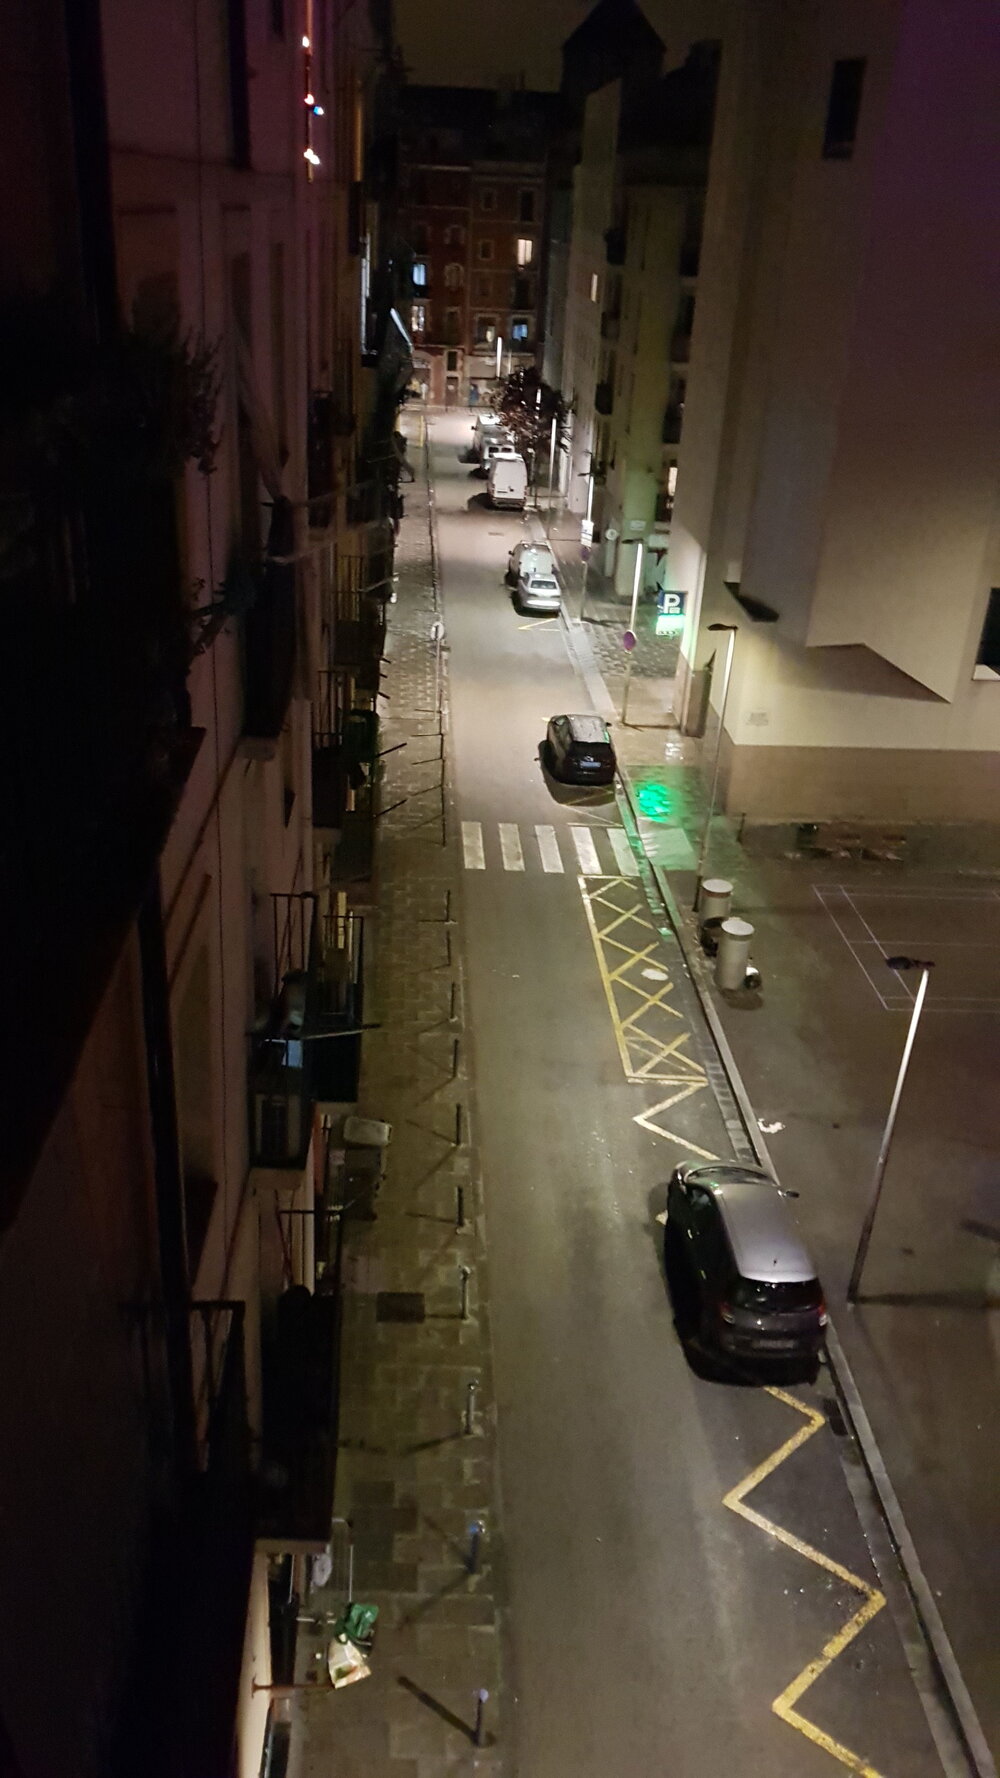  Figura 5. Calle Robadors de noche. Barcelona, 2020. Fotografía de Alex Giménez. Usado con permiso.  